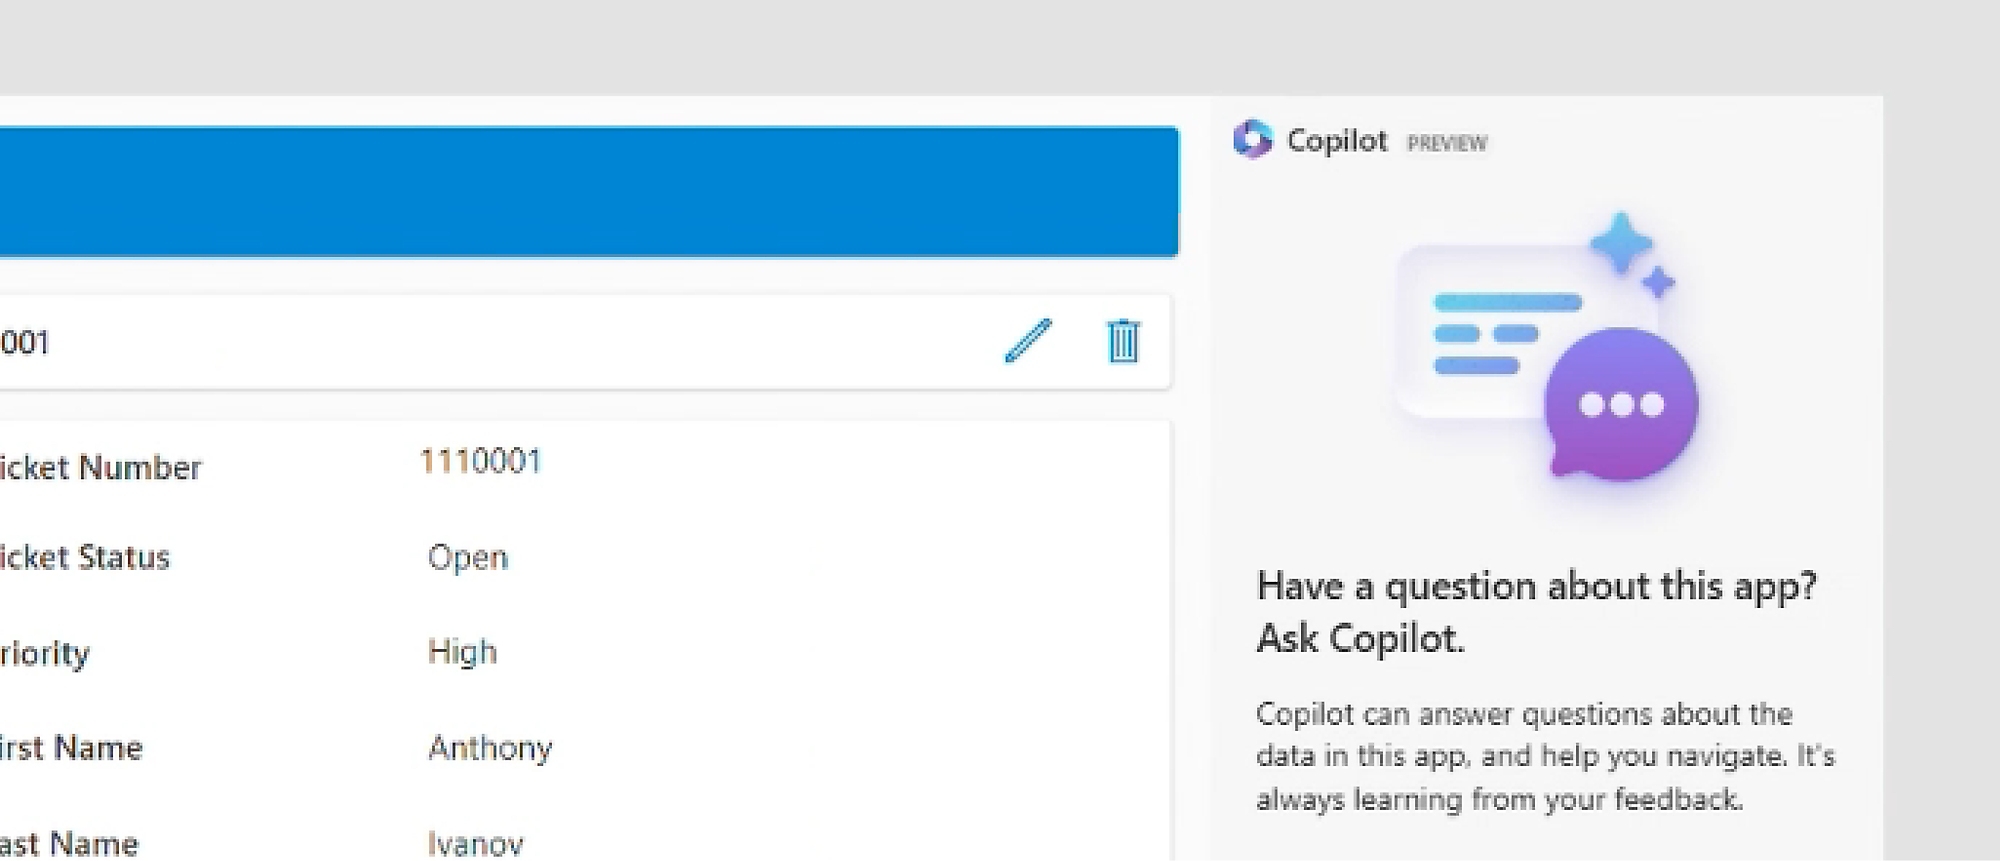 Cuplikan layar Copilot di Power Apps, dengan pengguna diminta untuk mengajukan pertanyaan Copilot tentang aplikasi